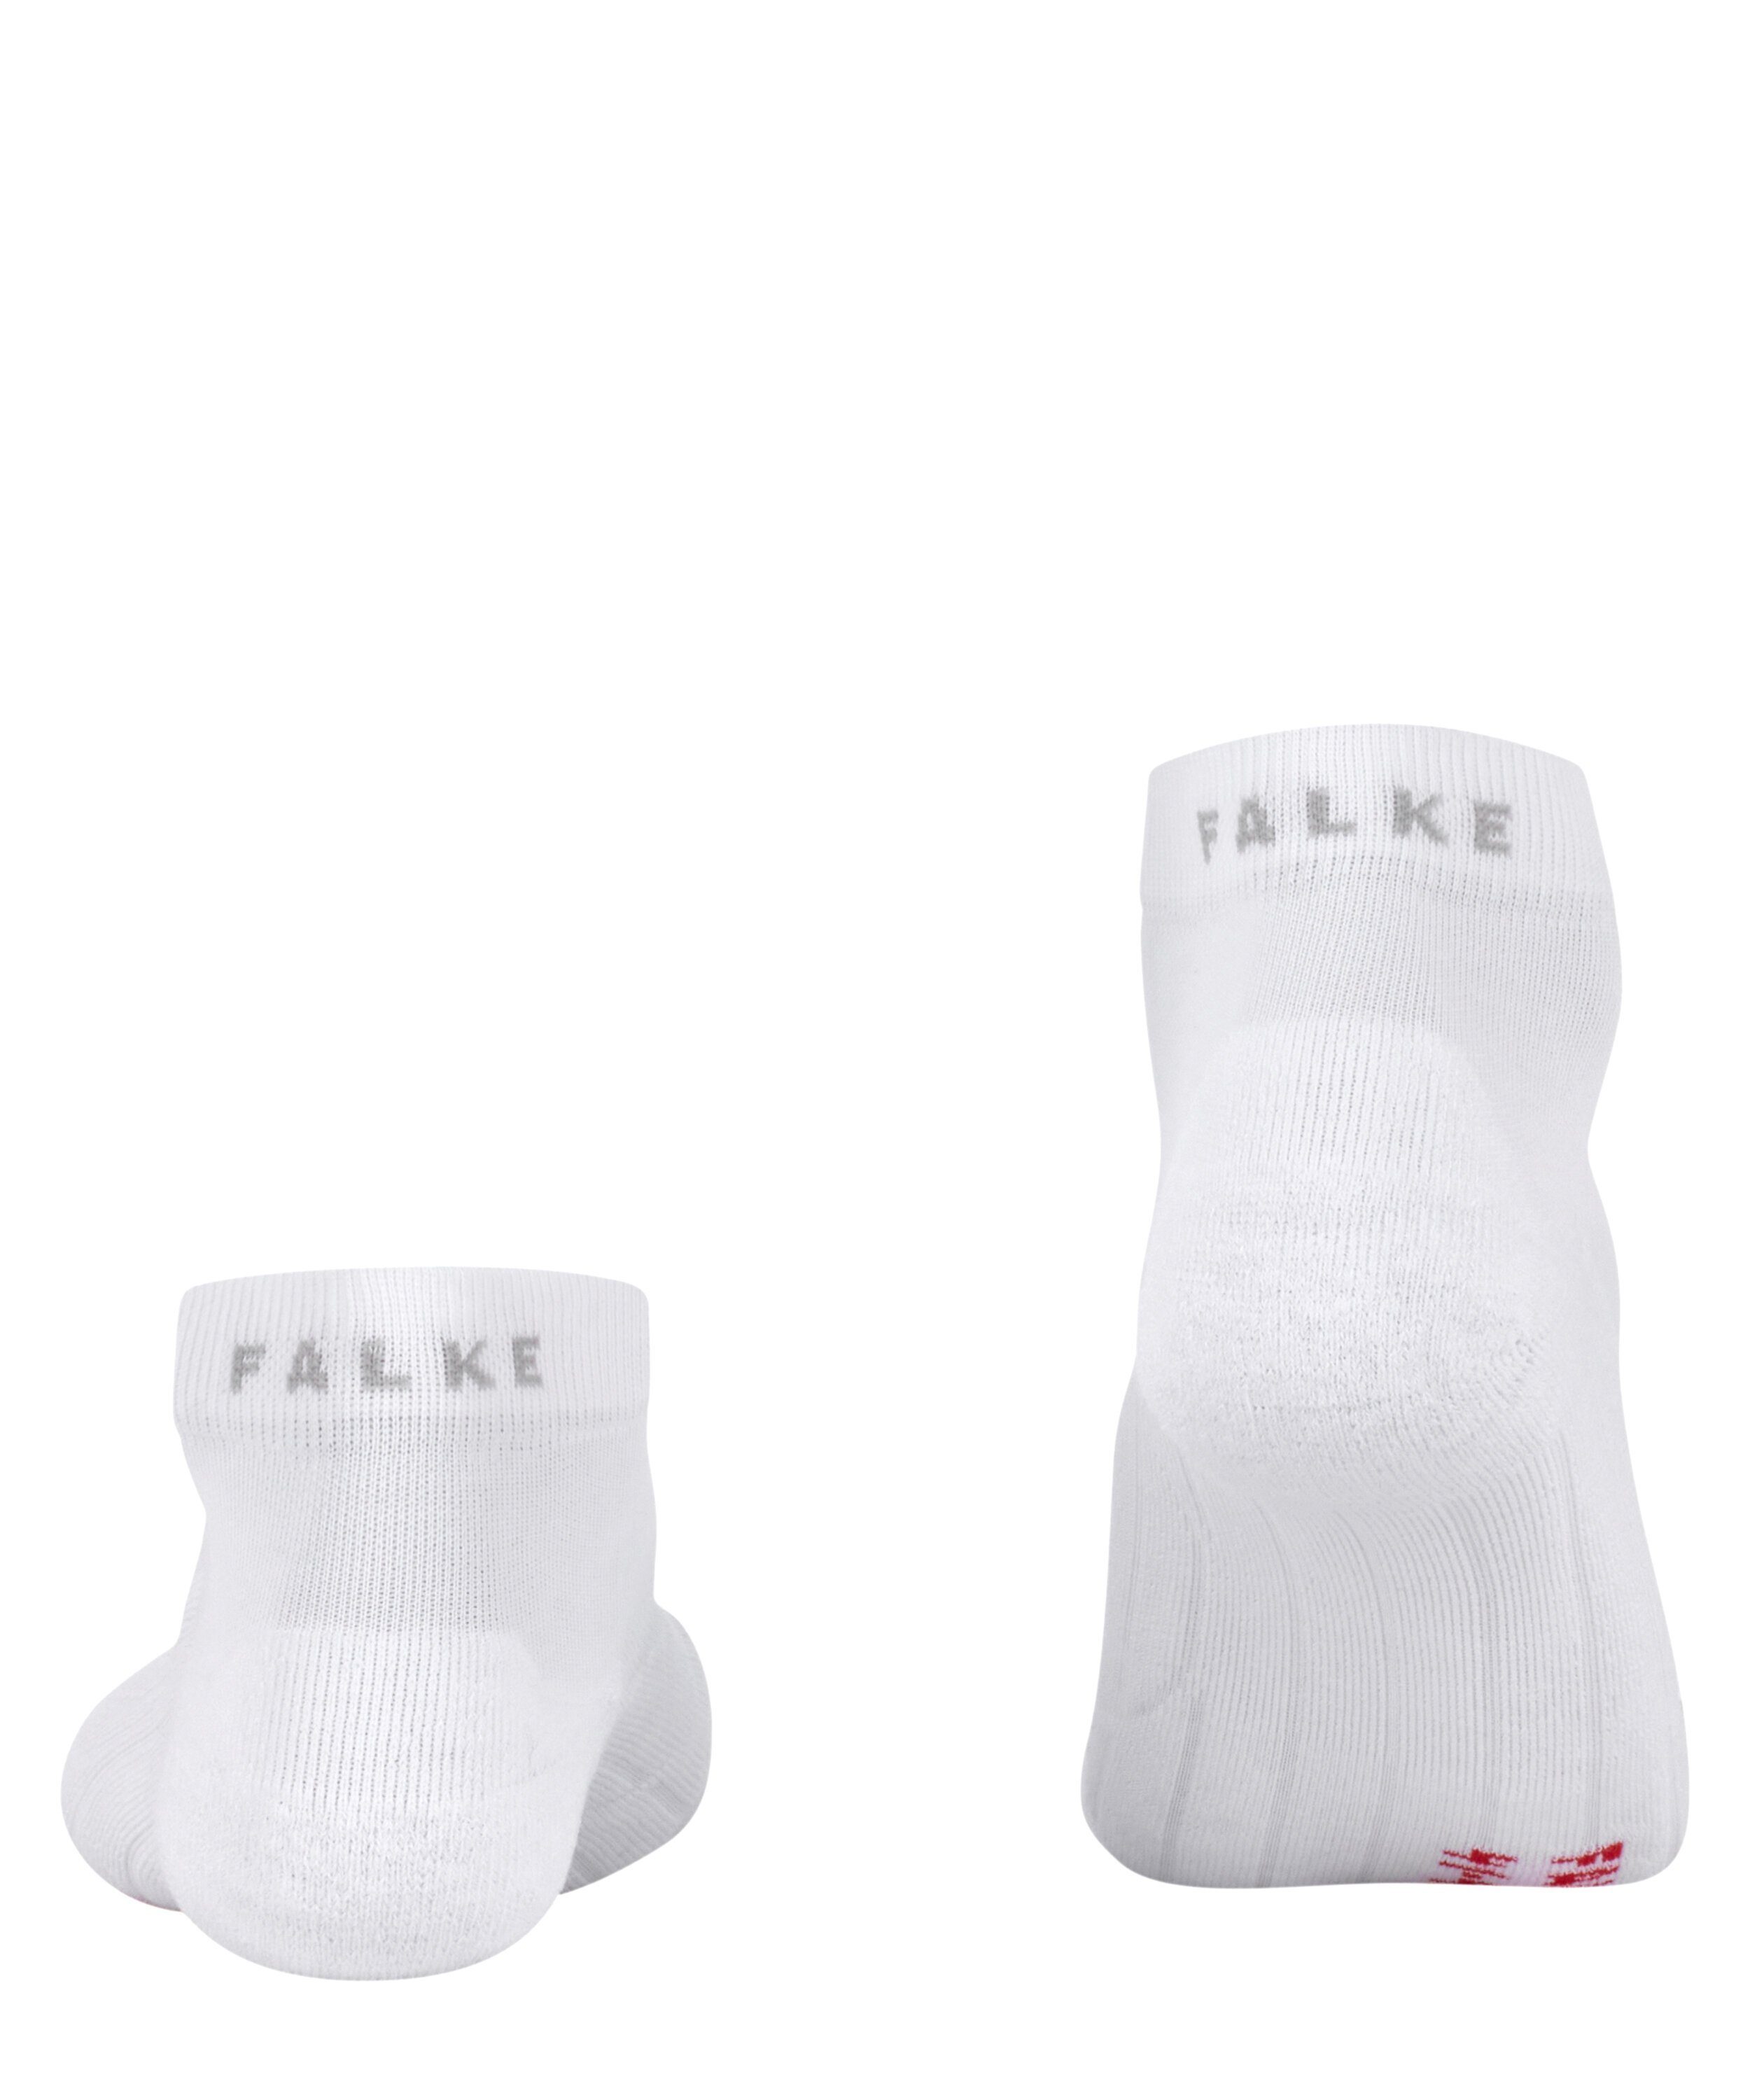 FALKE Sportsocken GO2 Short (1-Paar) white mit (2000) mittelstarker Spikeschuhe für Polsterung